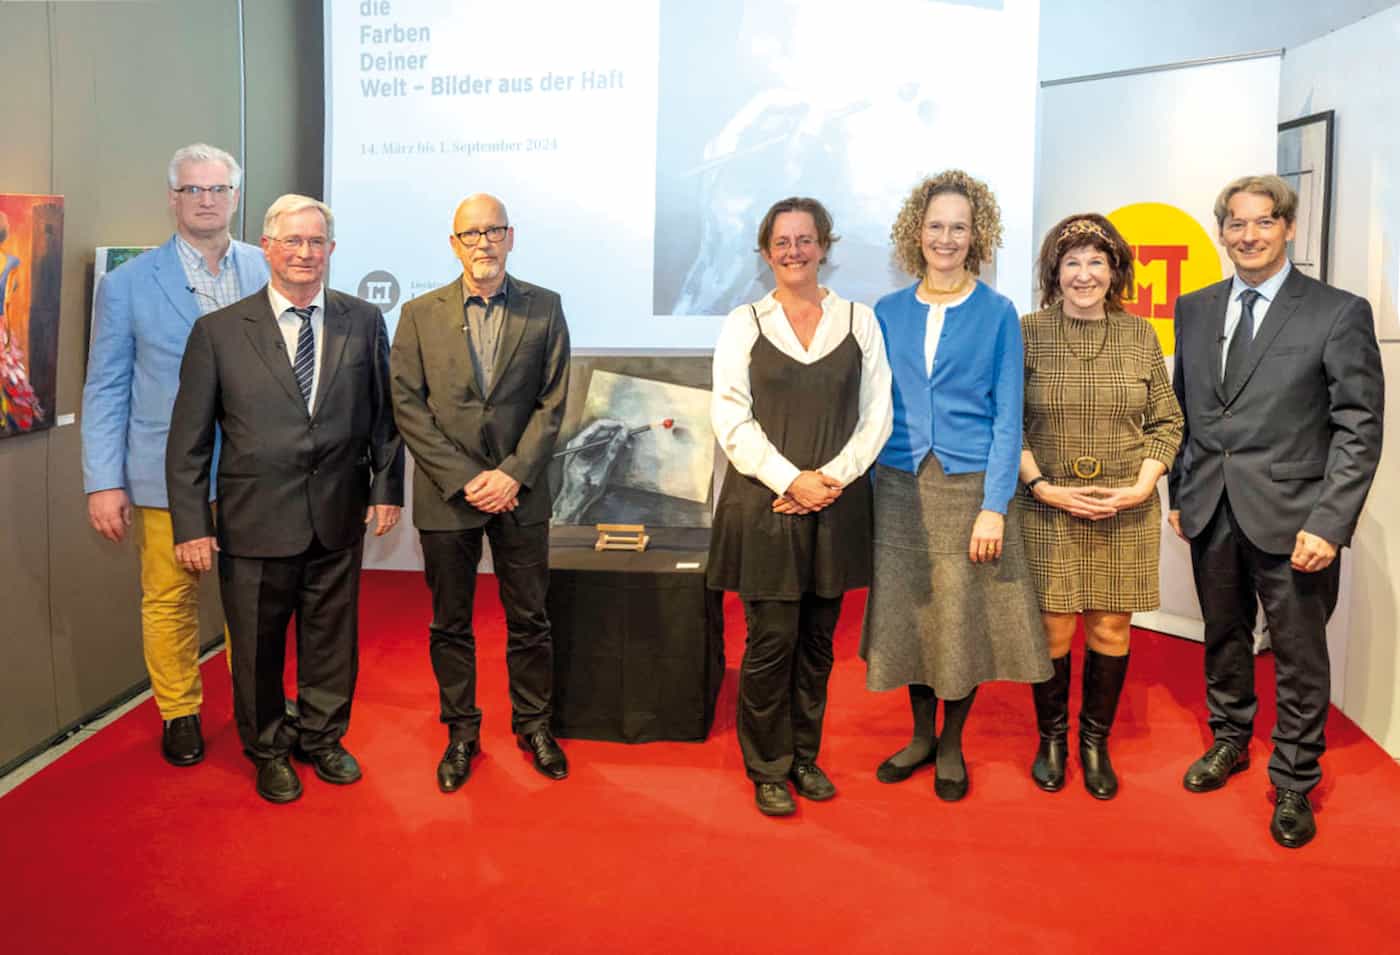 Liechtensteinisches LandesMuseum – Eröffnung der Sonderausstellung «Entdecke die Farben Deiner Welt – Bilder aus der Haft»  